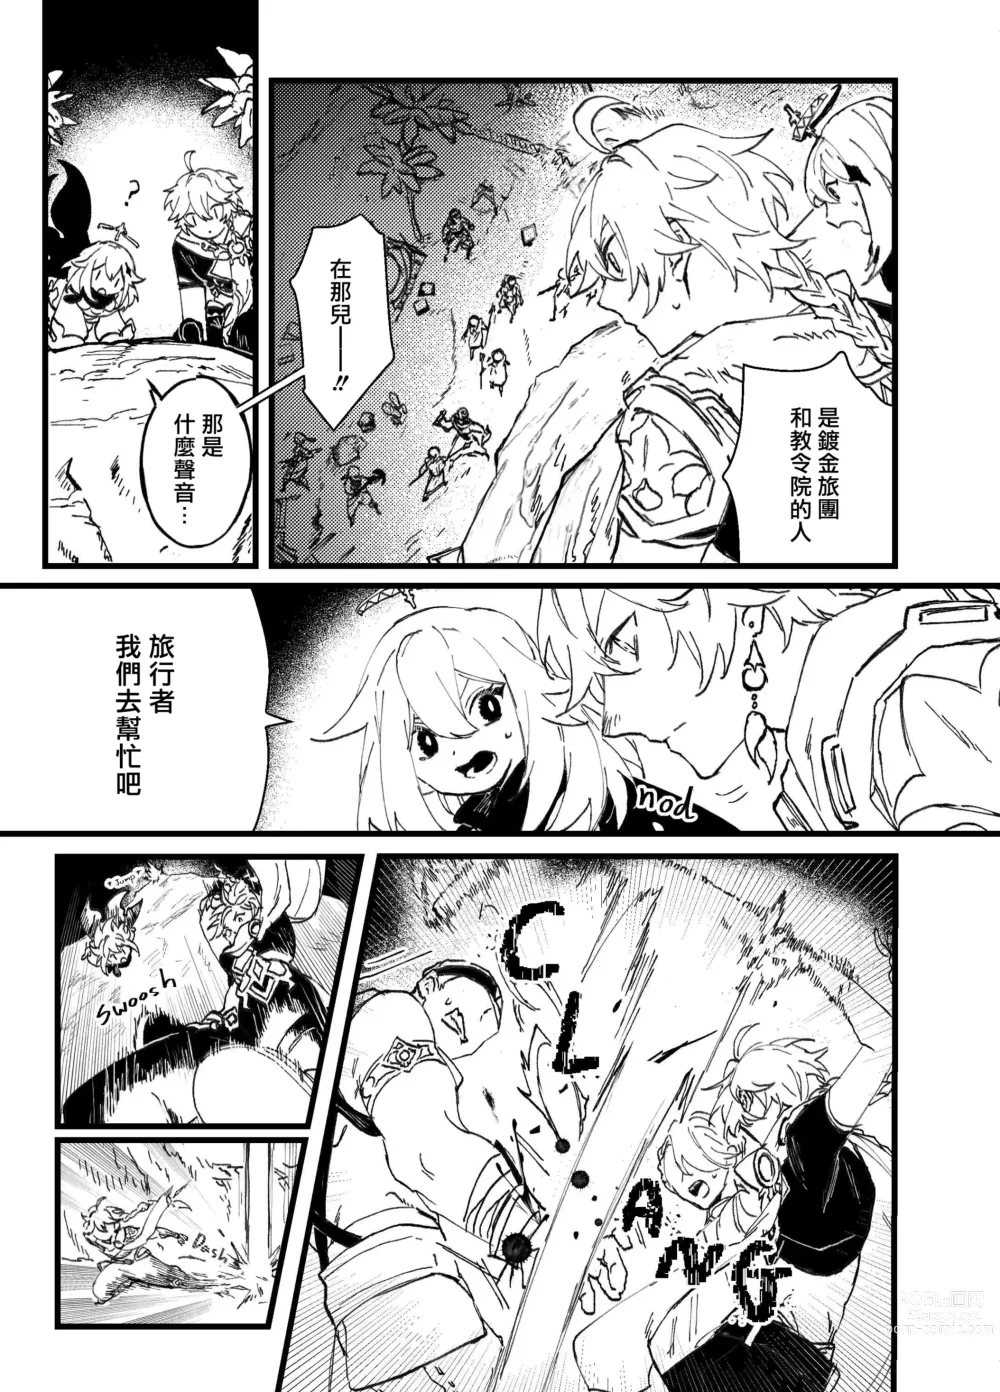 Page 13 of doujinshi Overheat